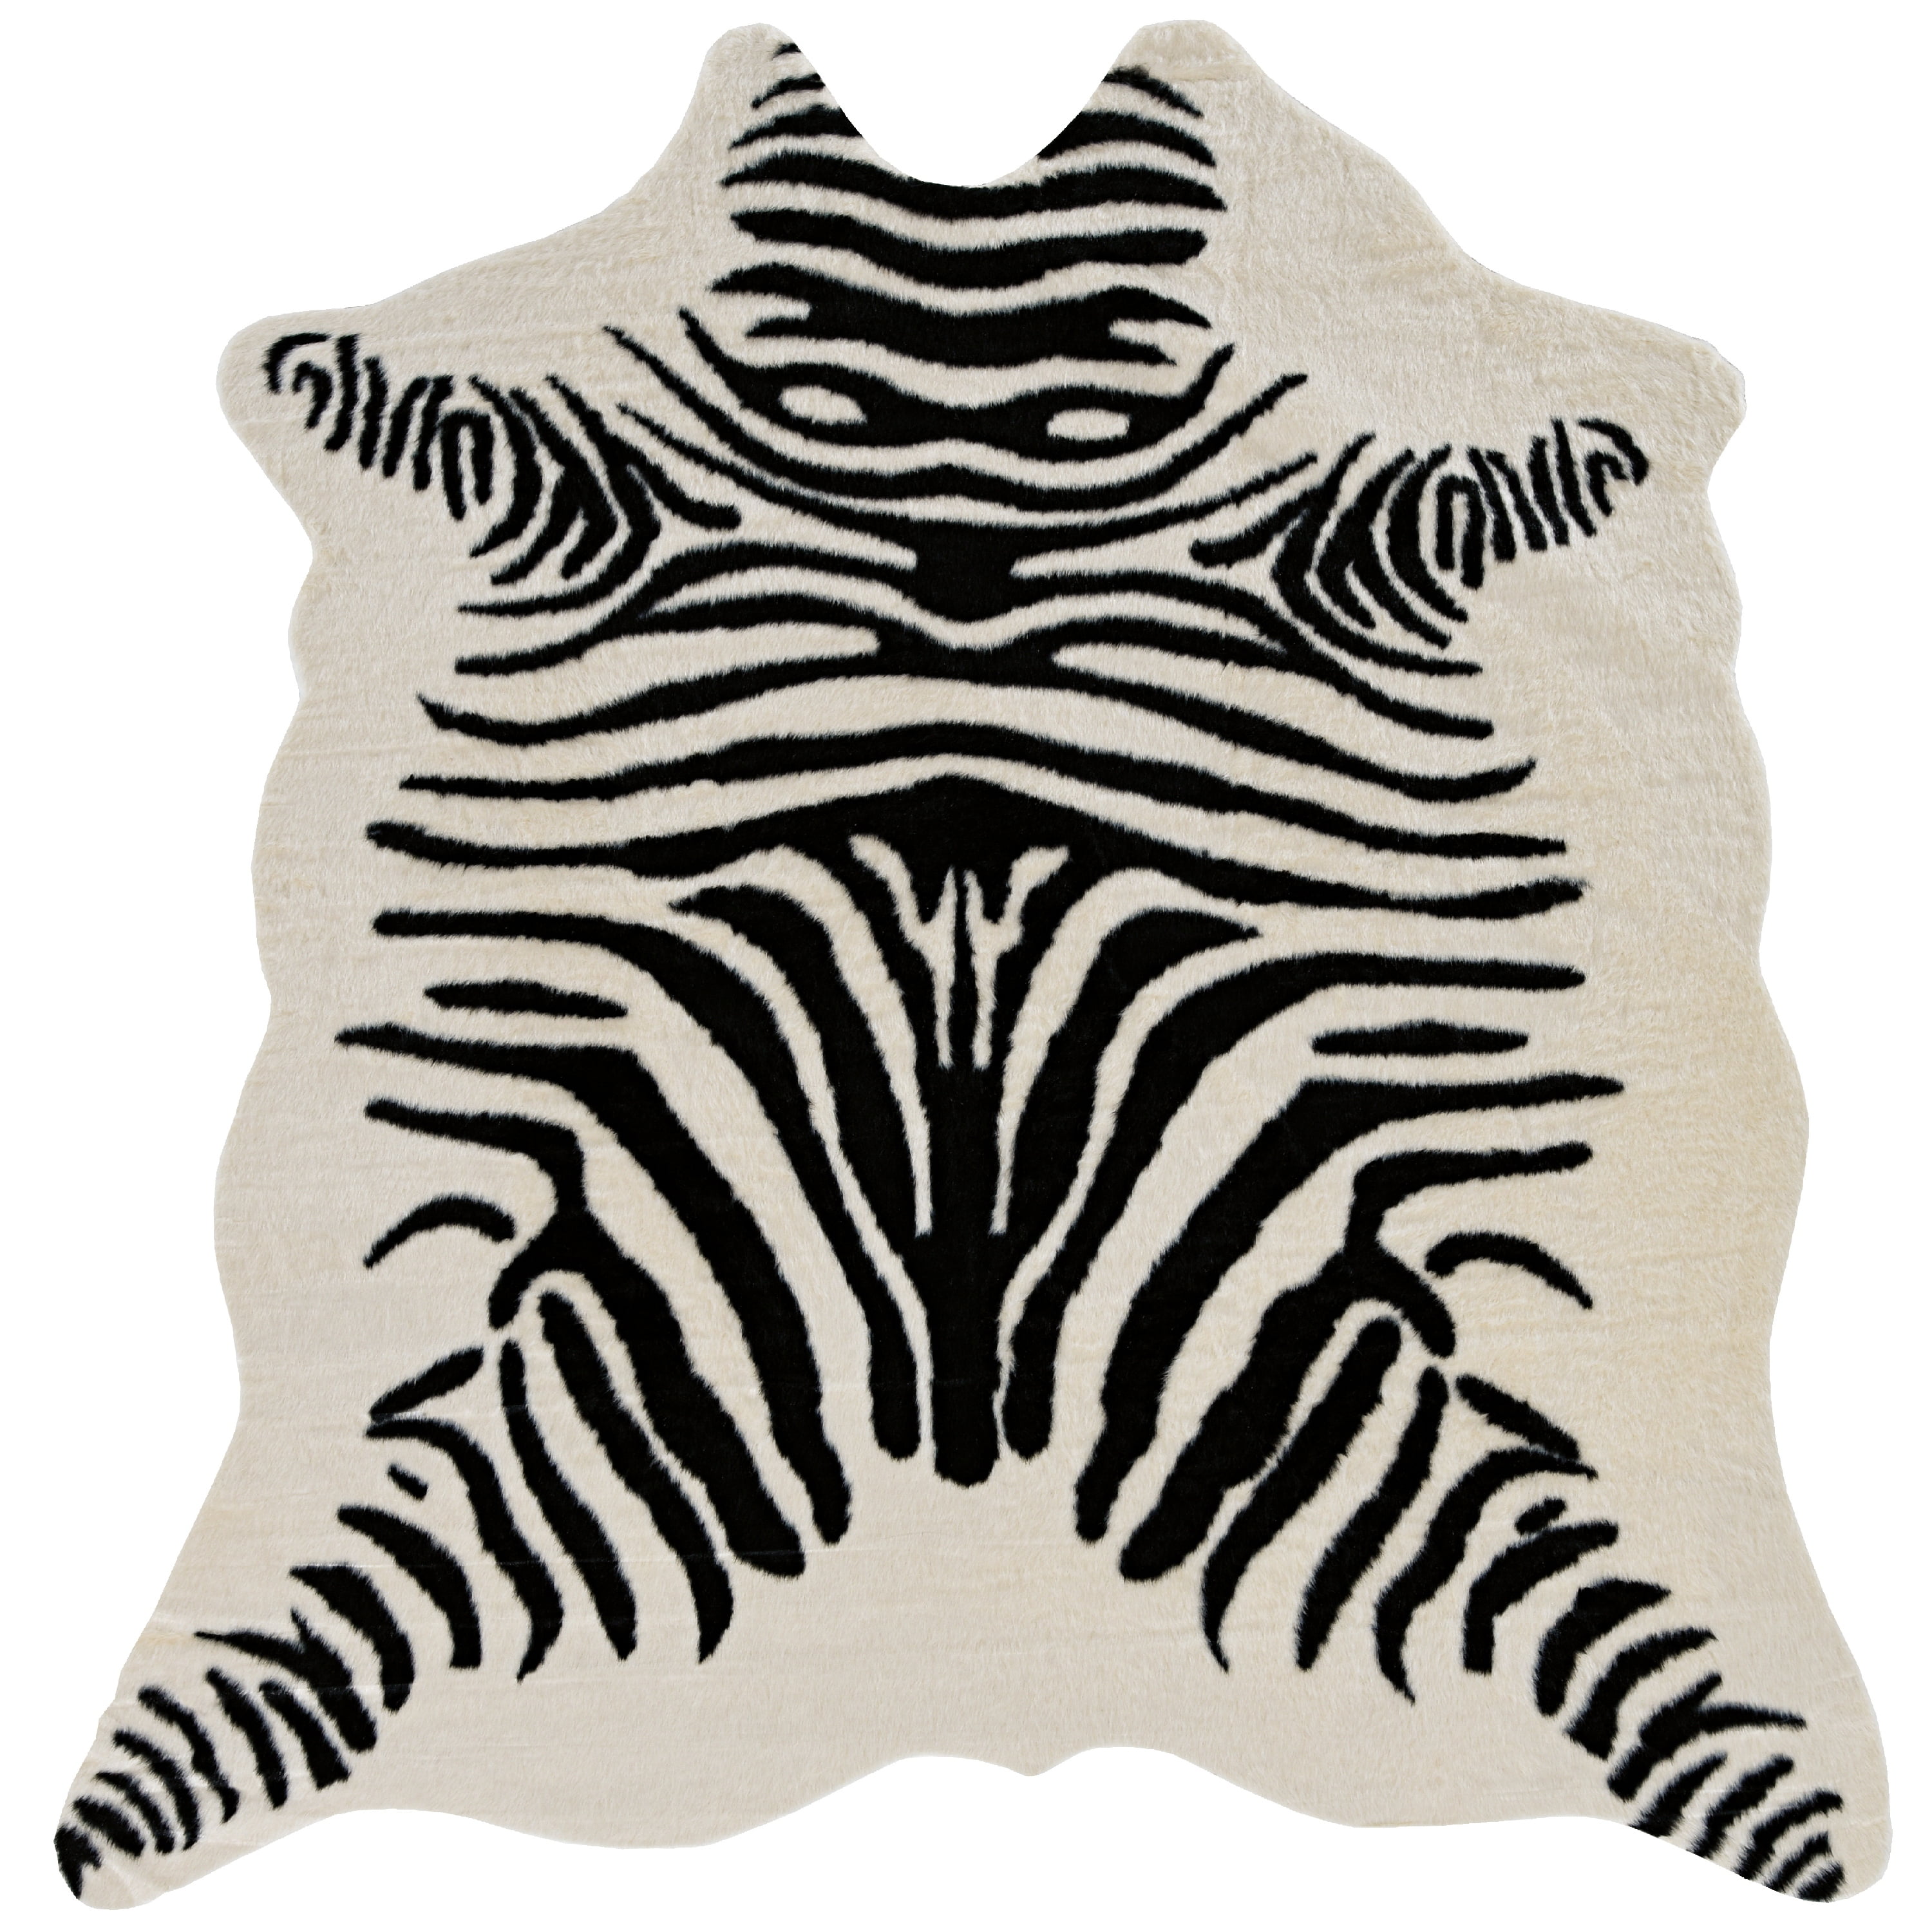 Zebra Cowhide Rug Size 7' X 6.5' Black Striped Zebra Print Cowhide Rug O-059 